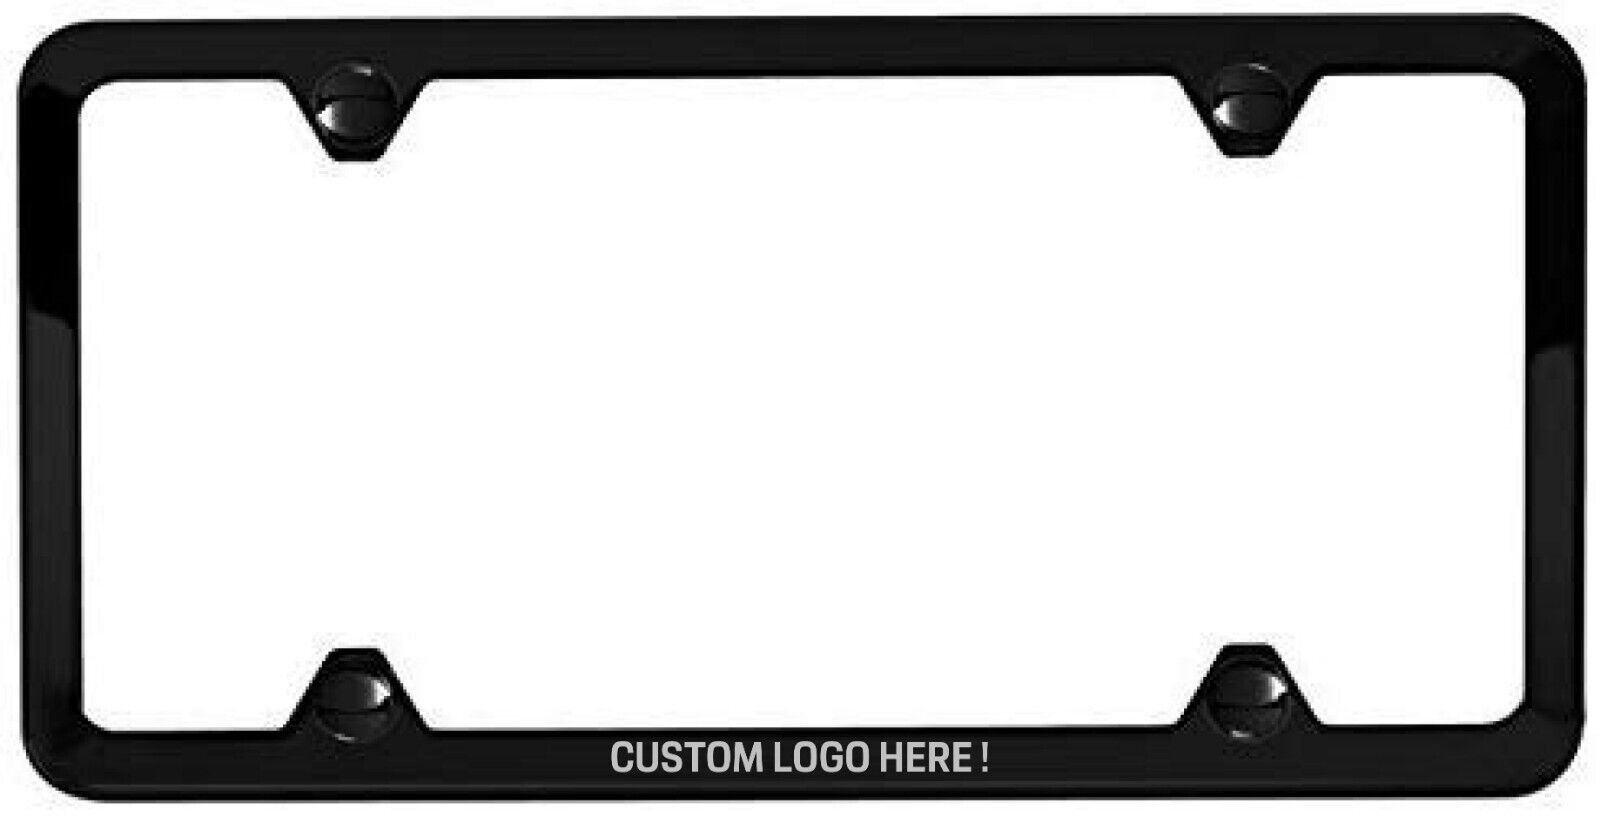 Custom BMW Slimline License Plate Frame w/Hardware Black, Polished, Brushed